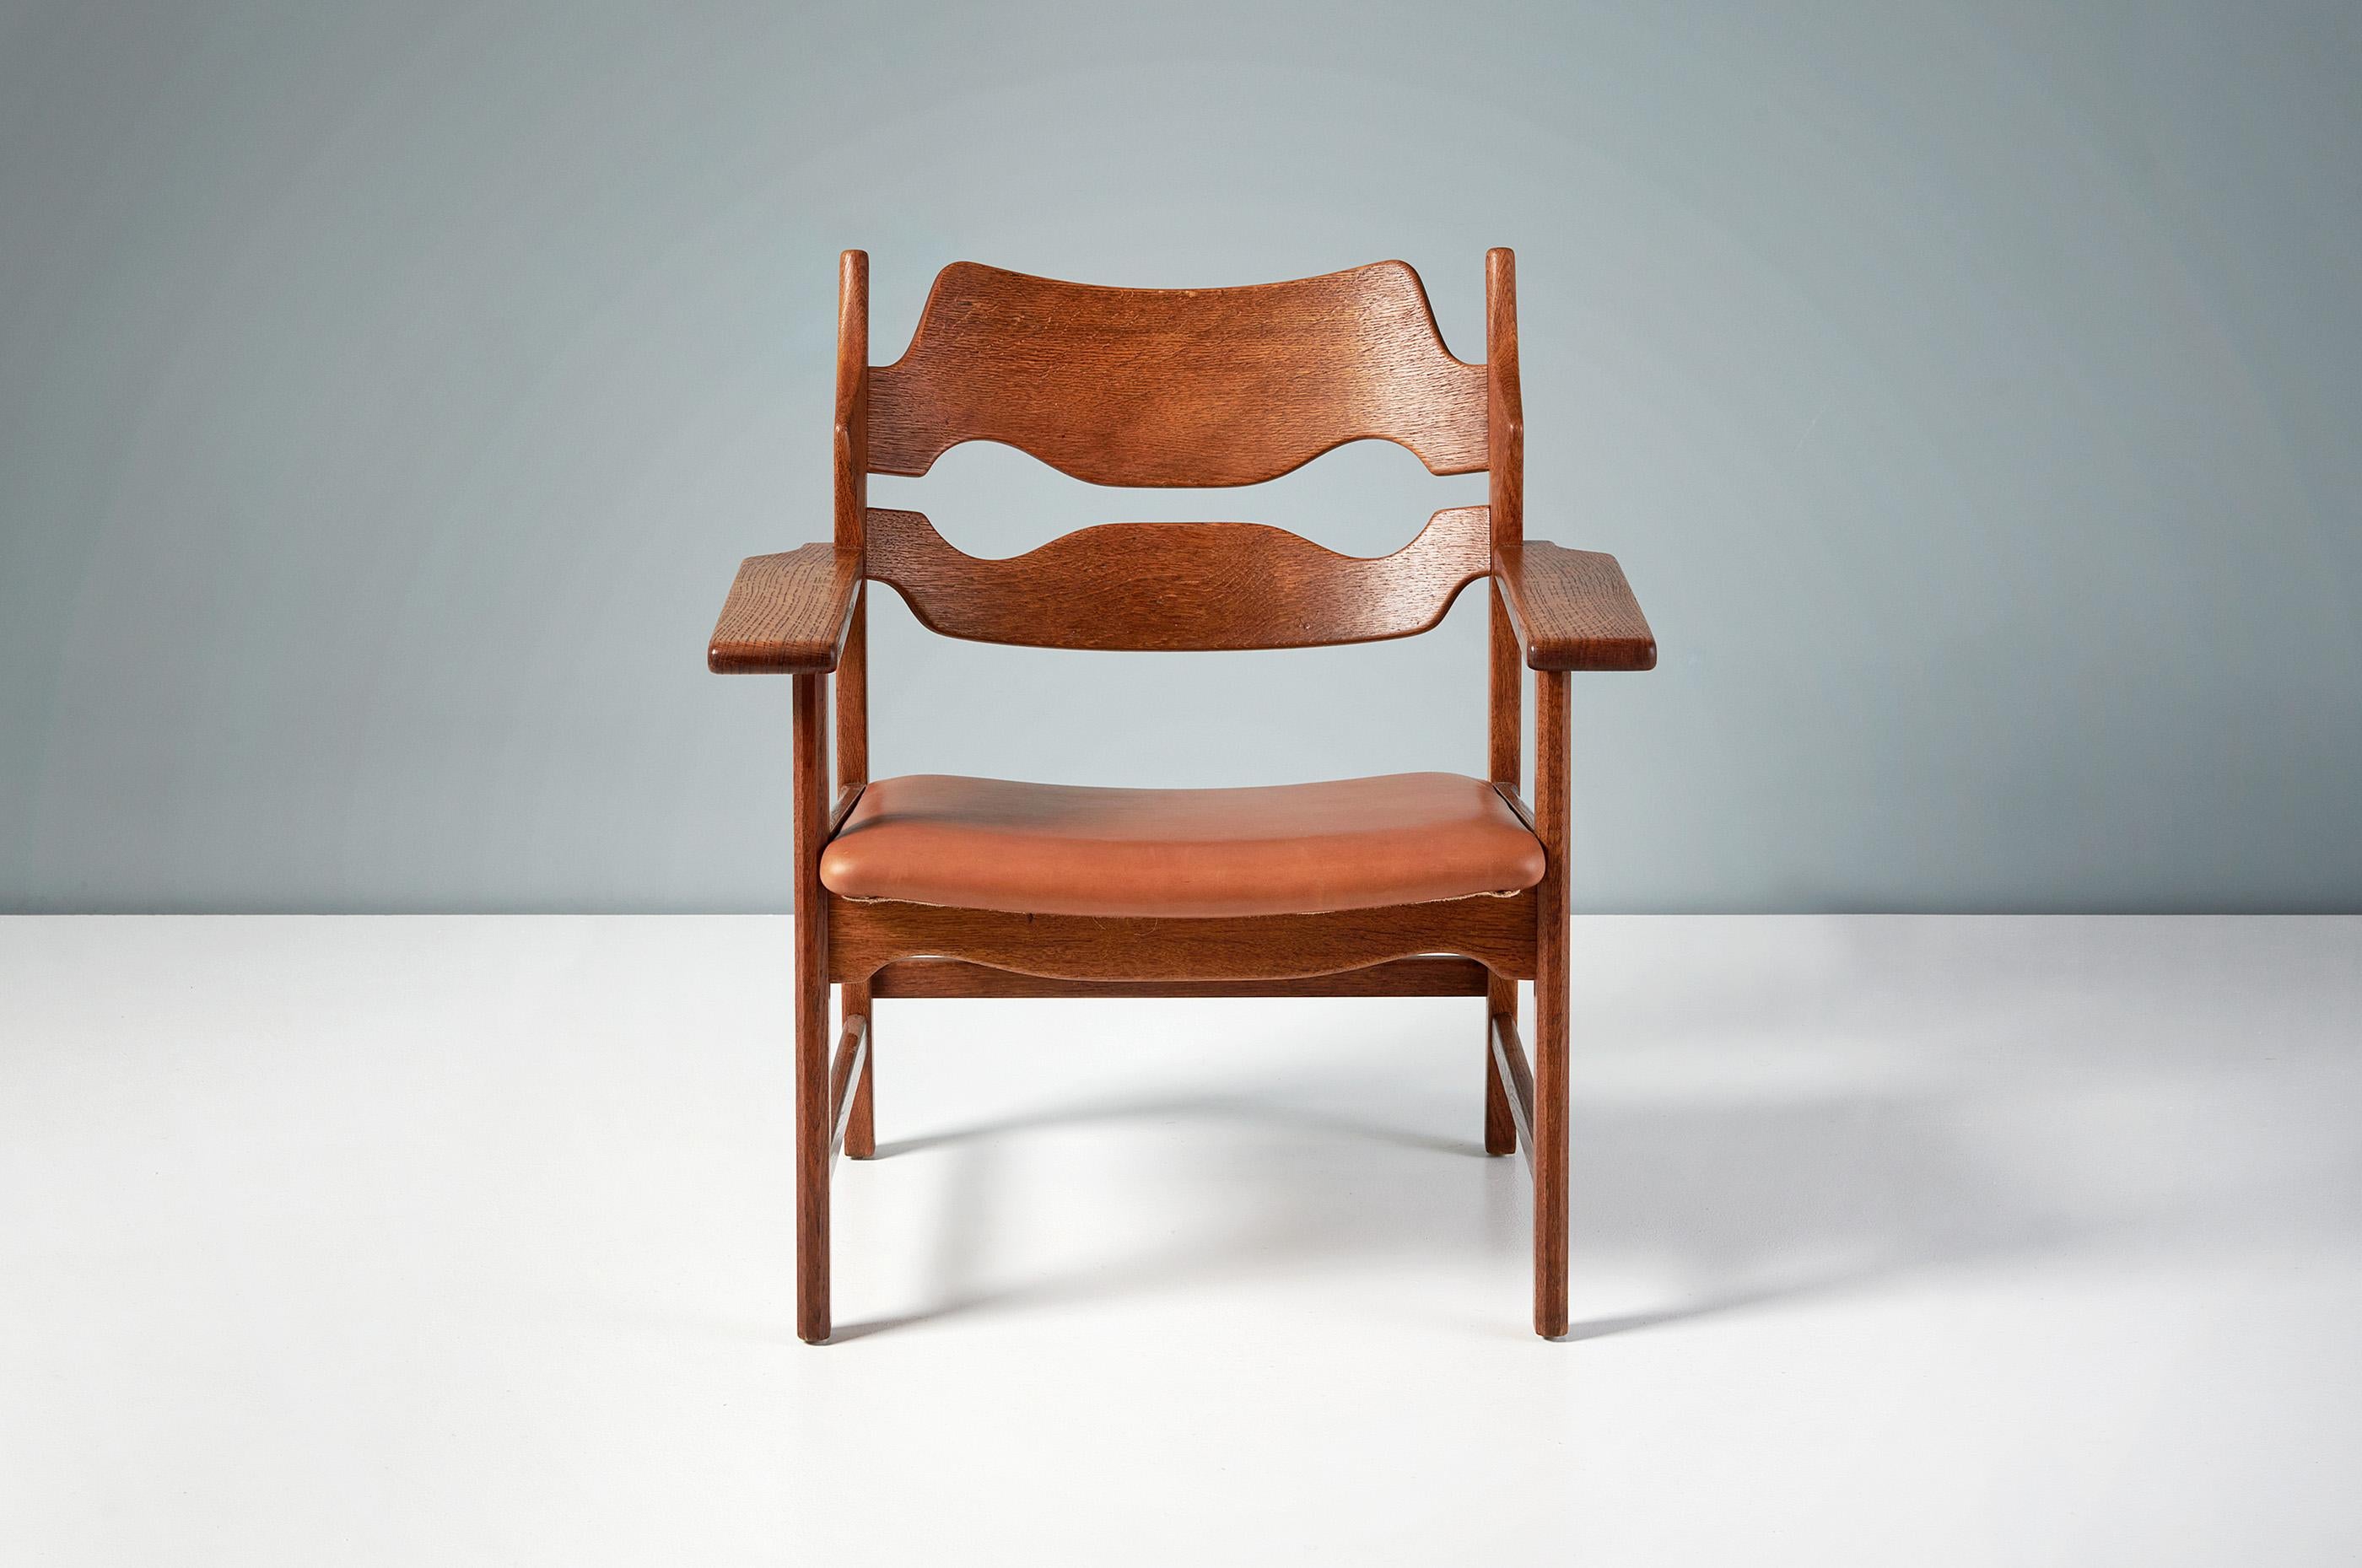 Henning Kjaernulf - Chaise à lames de rasoir, 1960

Chaise longue unique fabriquée par Nyrup Møbelfabrik, Danemark 1960. La chaise présente un dossier sculpté en forme de lame de rasoir et des accoudoirs épais et larges, tous fabriqués en chêne